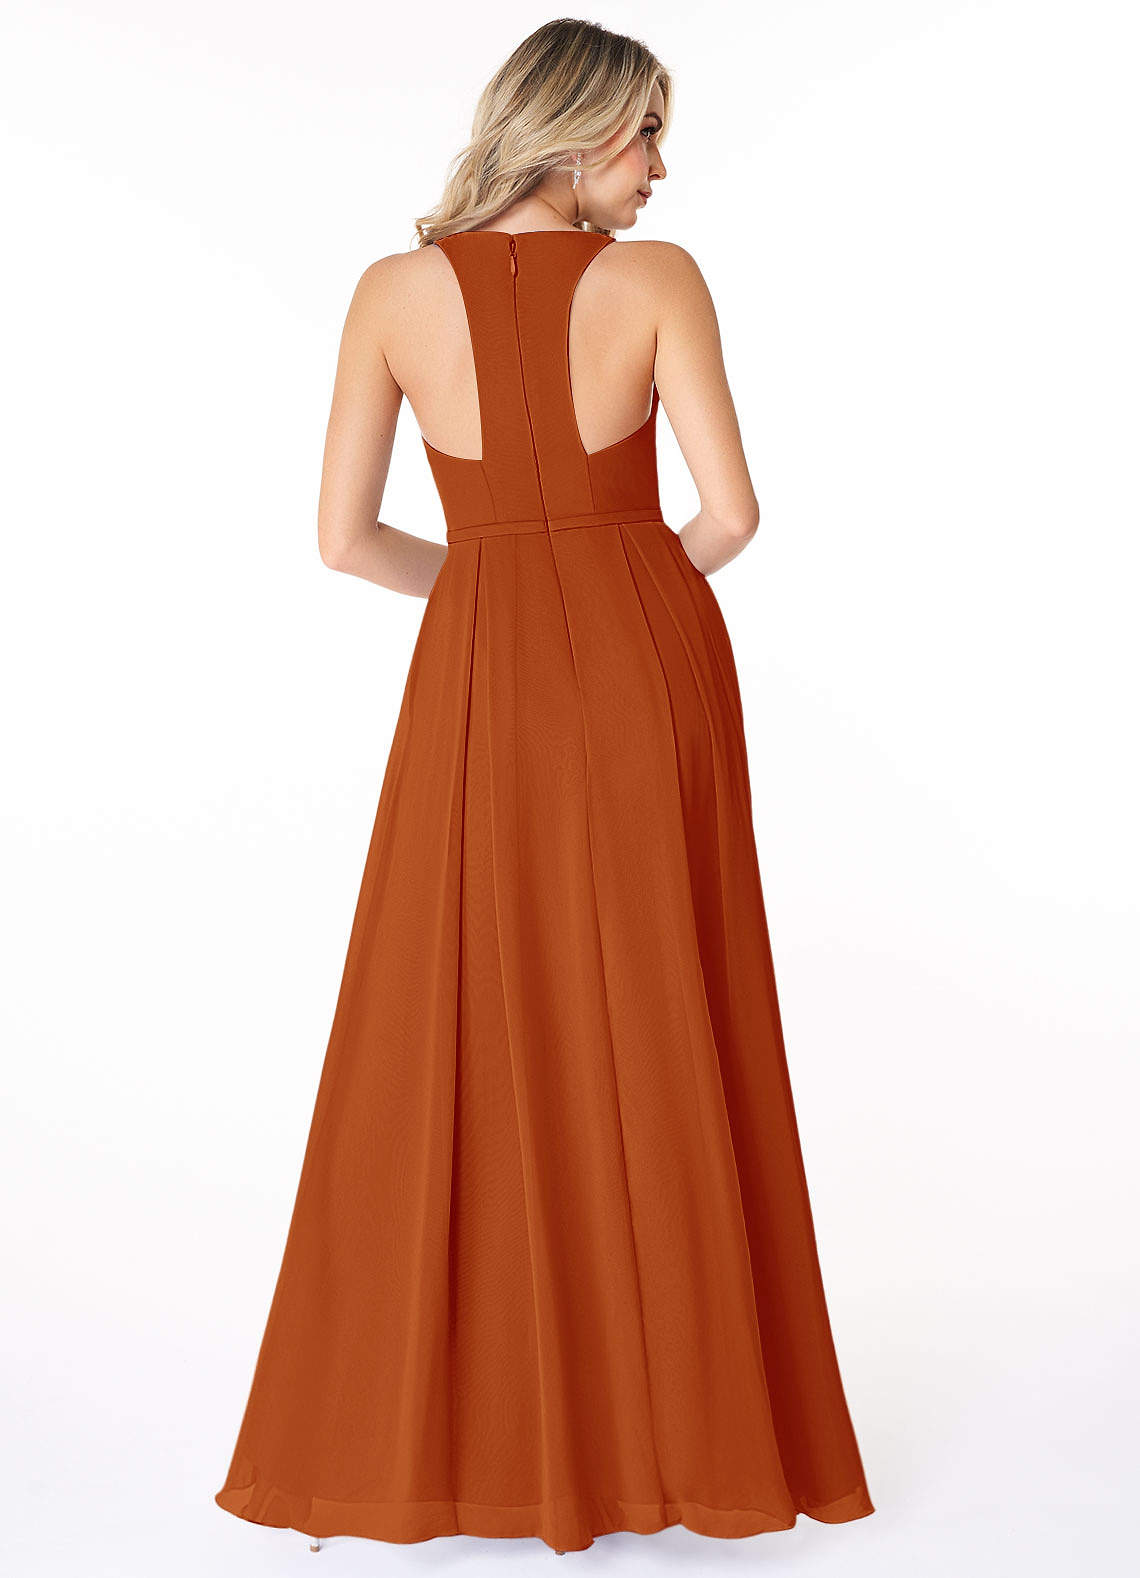 Azazie Mimi Bridesmaid Dresses A-Line V-Neck Chiffon Floor-Length Dress image1